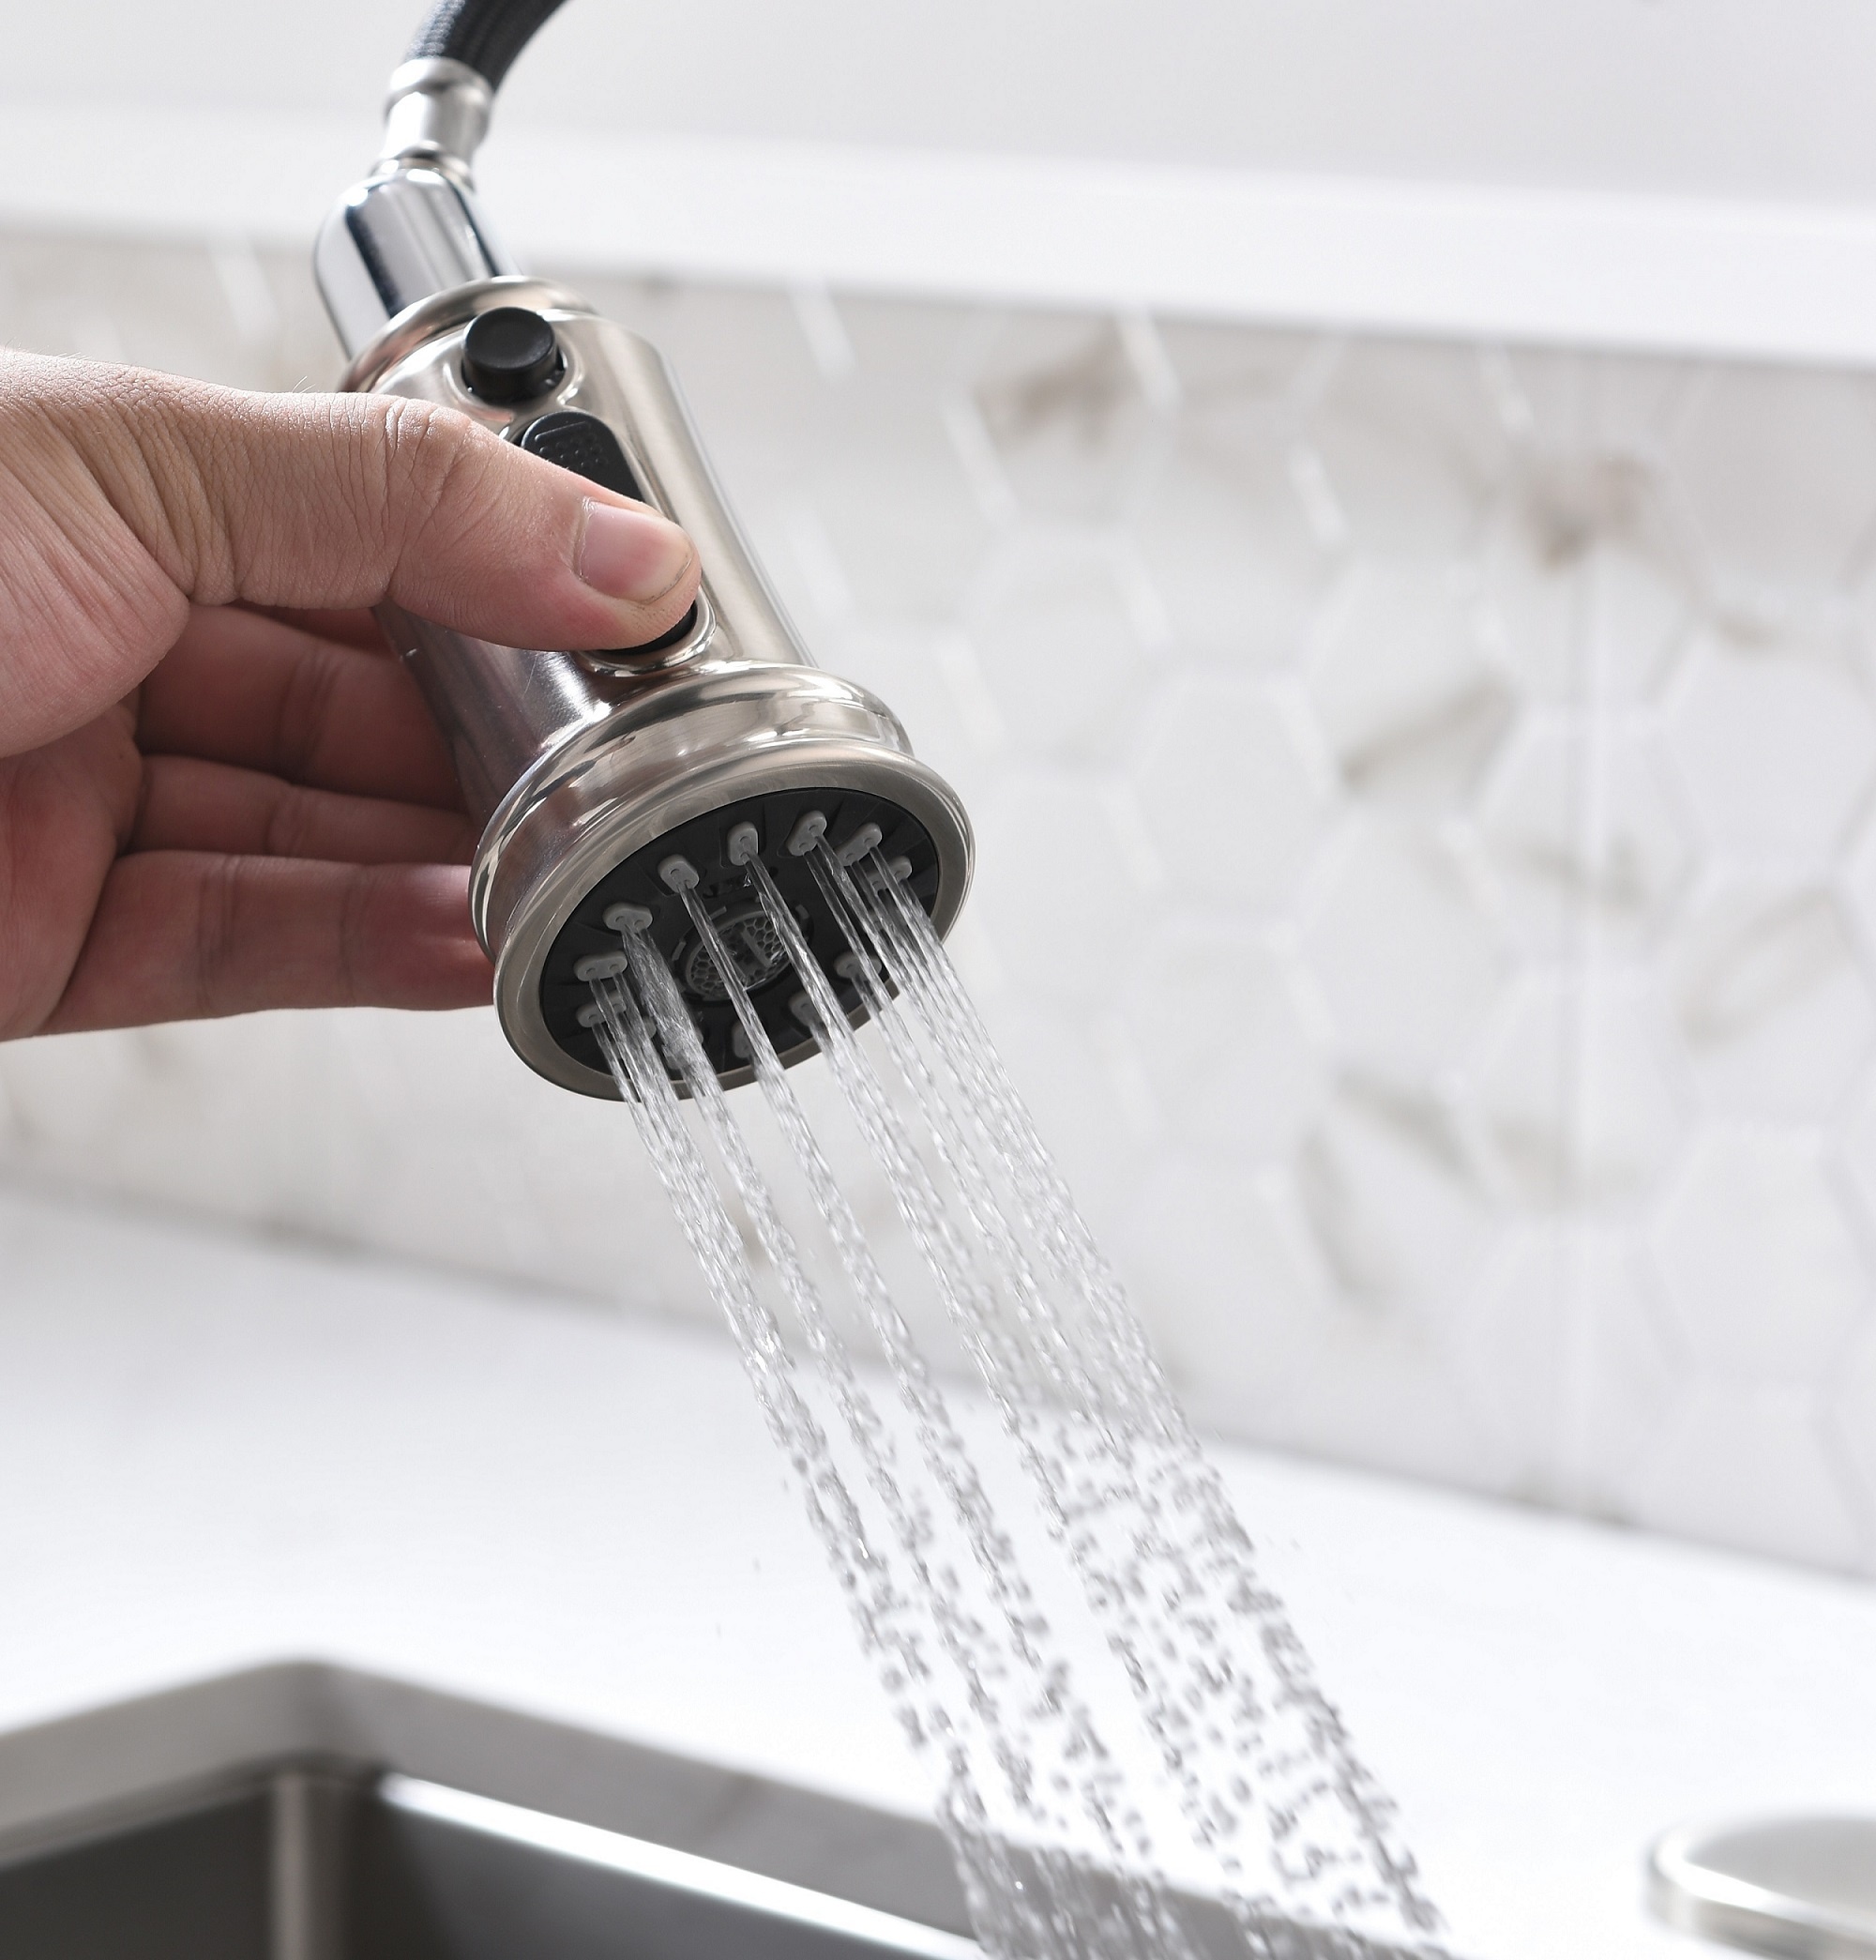 APS135-BN Kitchen-Faucet Cupc Swivel Spout For Kitchen Sink Faucet Pull Down Kitchen Faucet